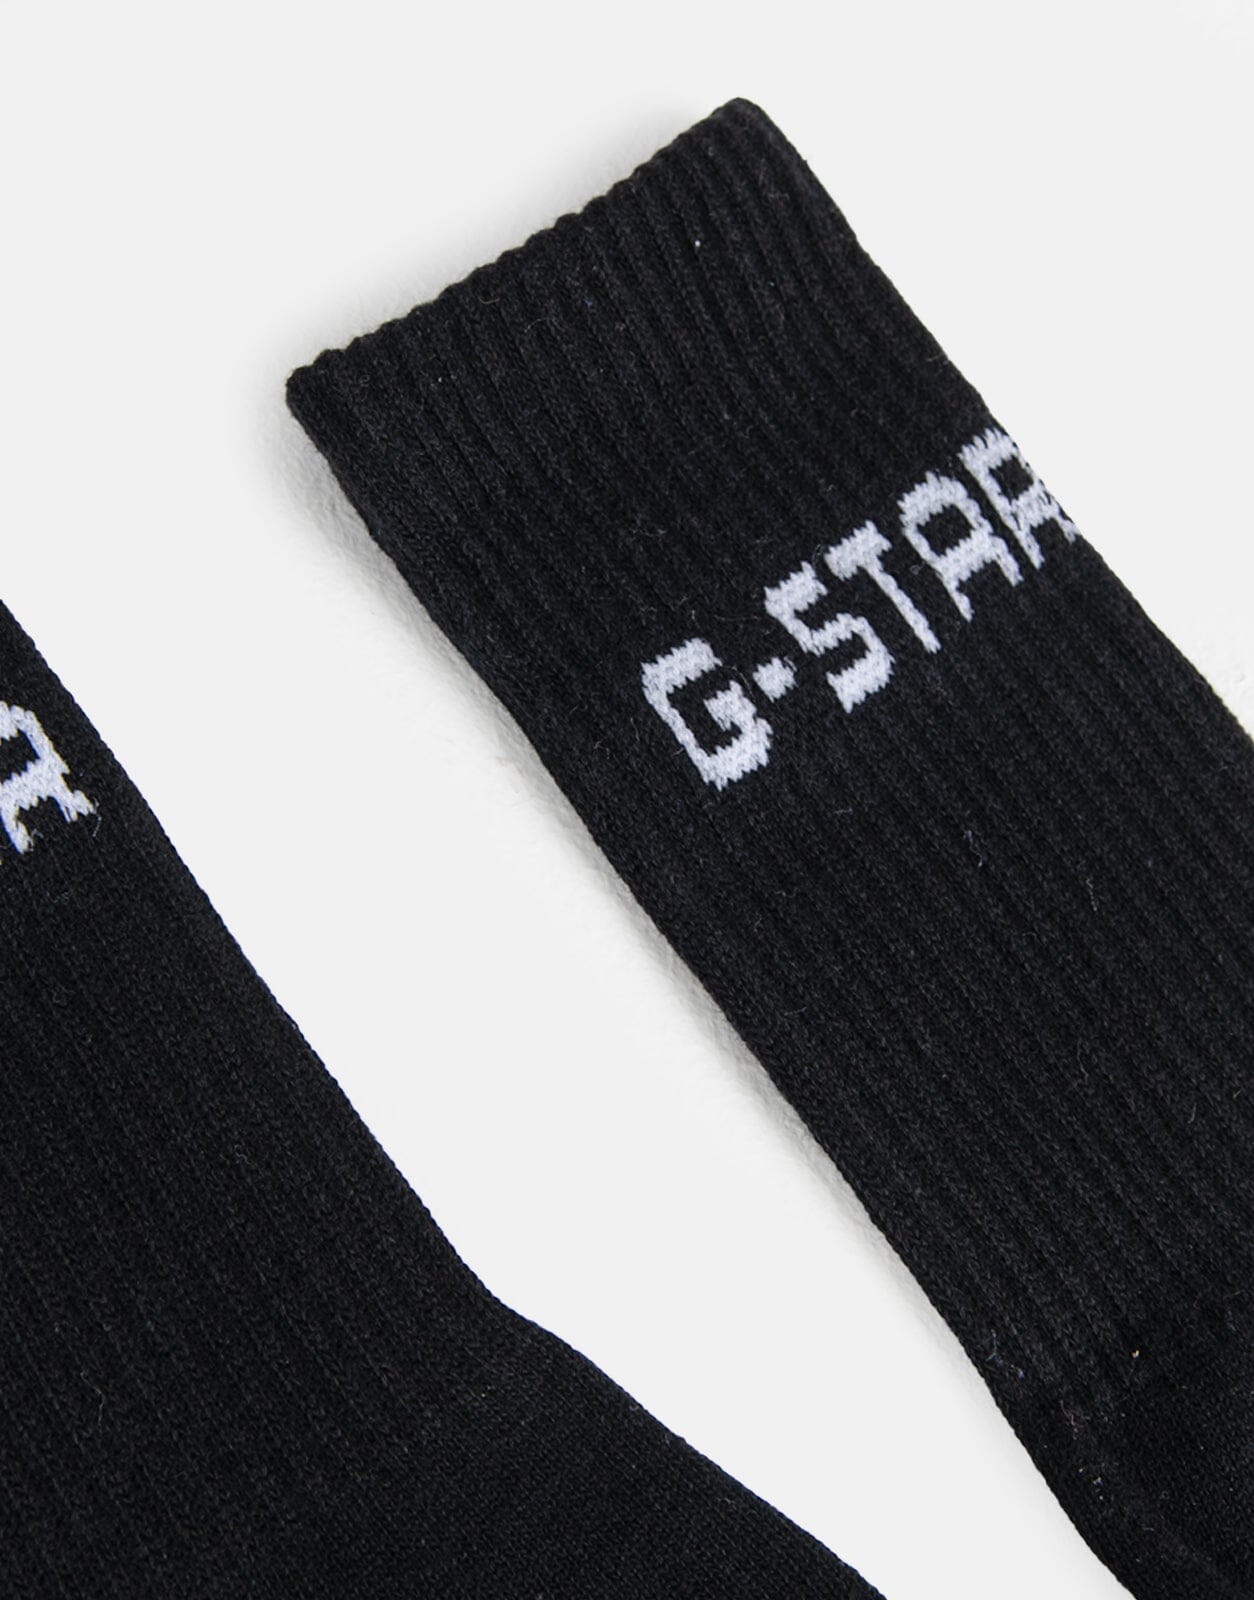 G-Star RAW Sport 2 Pack Black Socks - Subwear